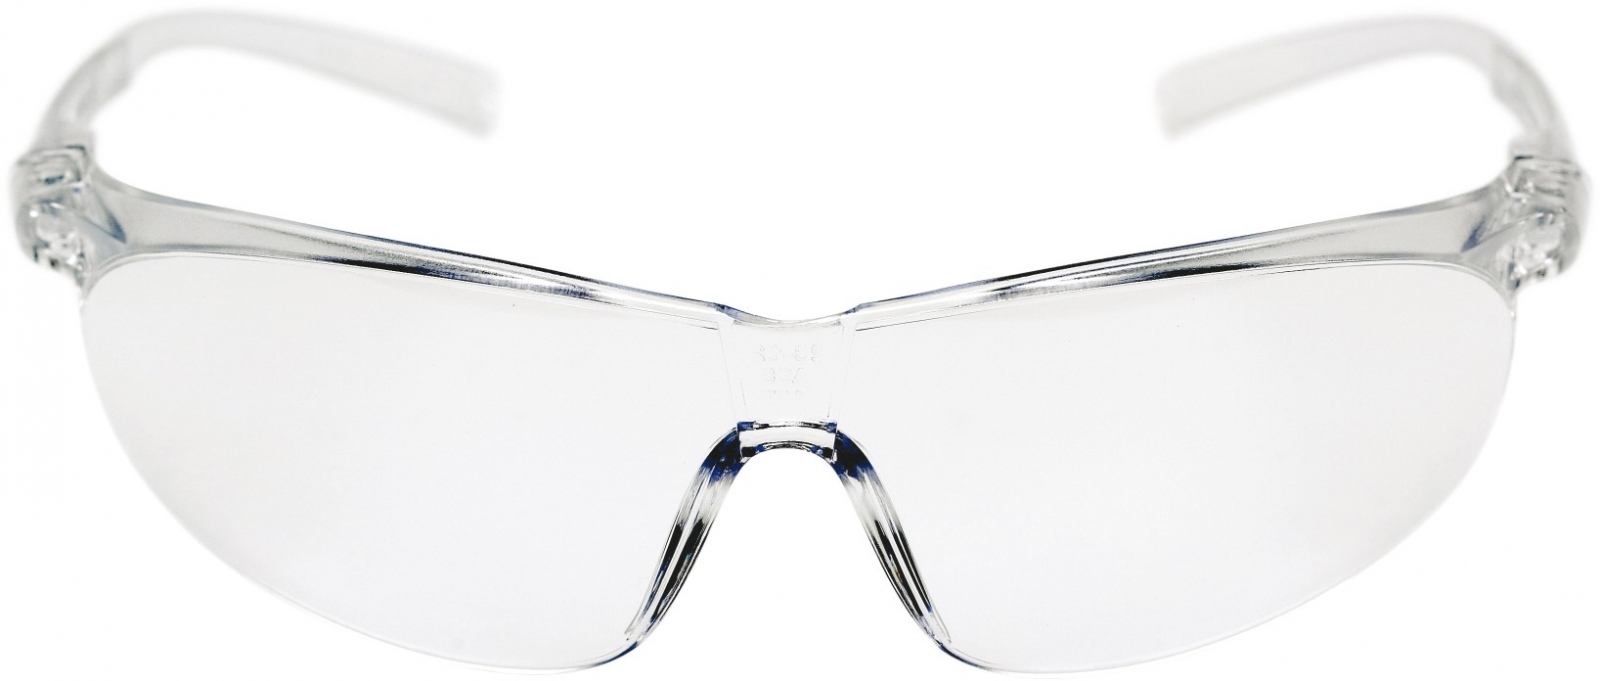 pics/3M/schutzbrille/3m-tora0-schutzbrille-as-af-uv-pc-klar-rahmen-klar-inkl-brillenband.jpg